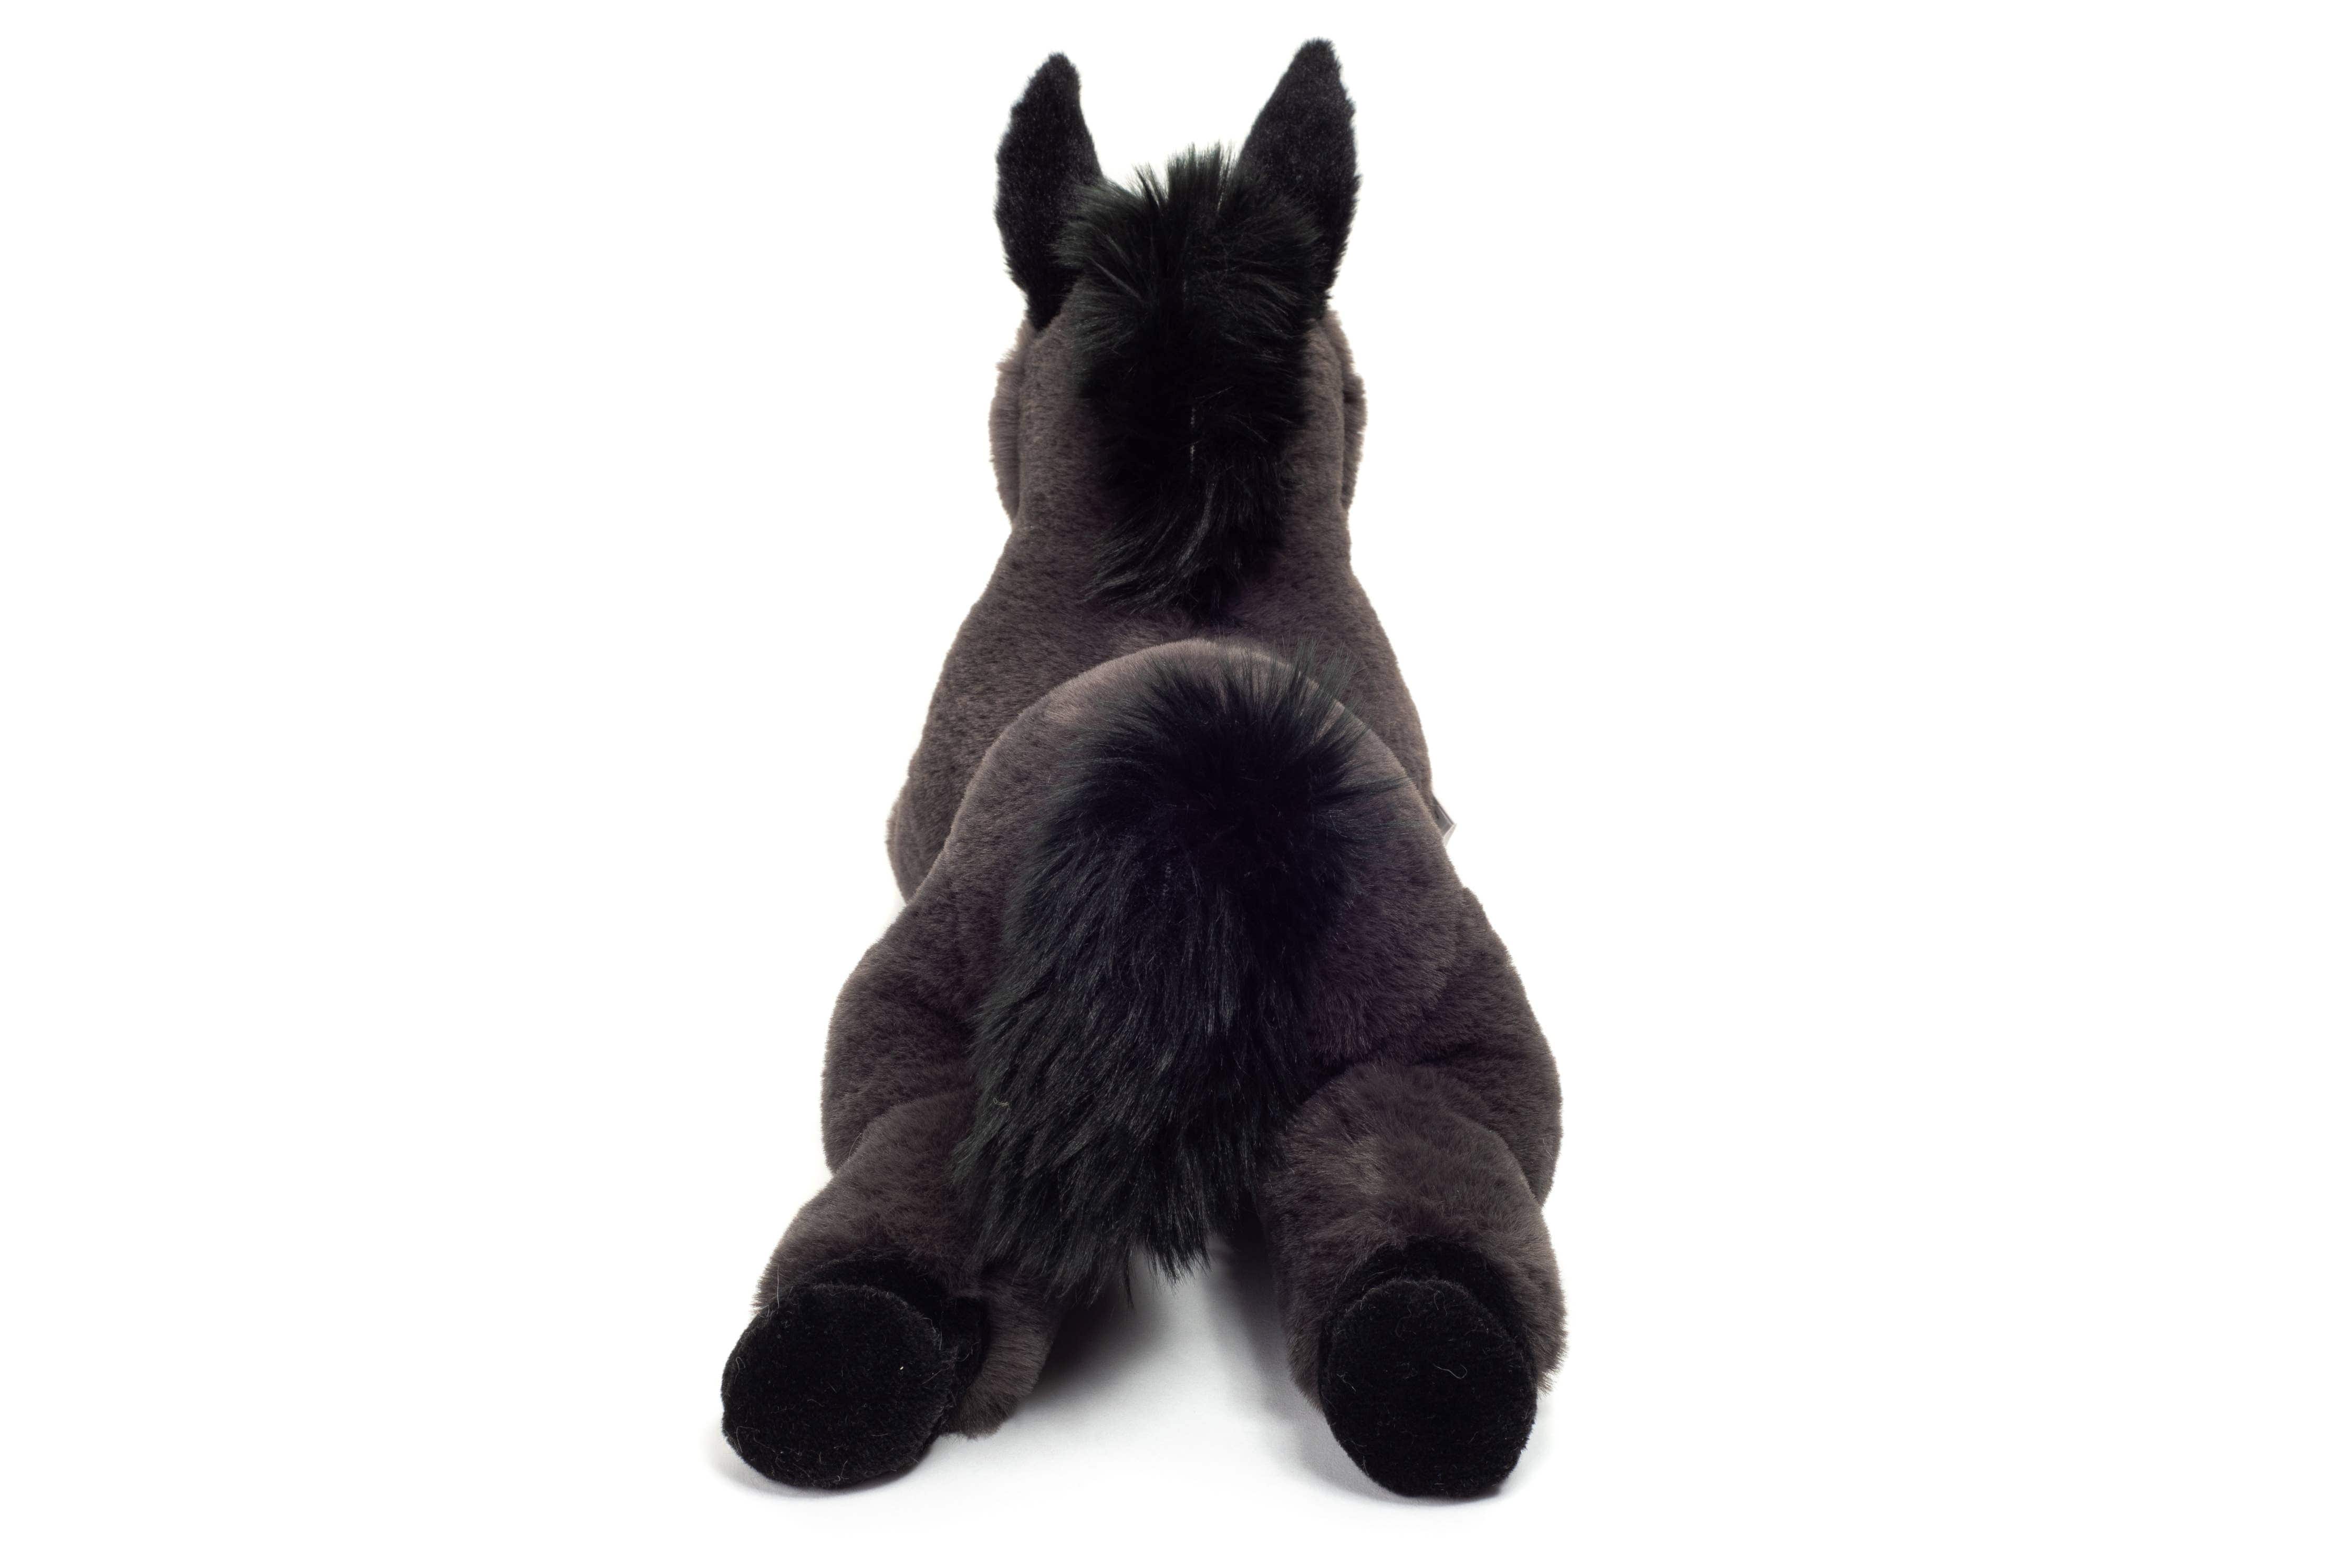 Plush Floppy Donkey Lying 34 cm - Plush Super Soft Toy by Teddy Hermann